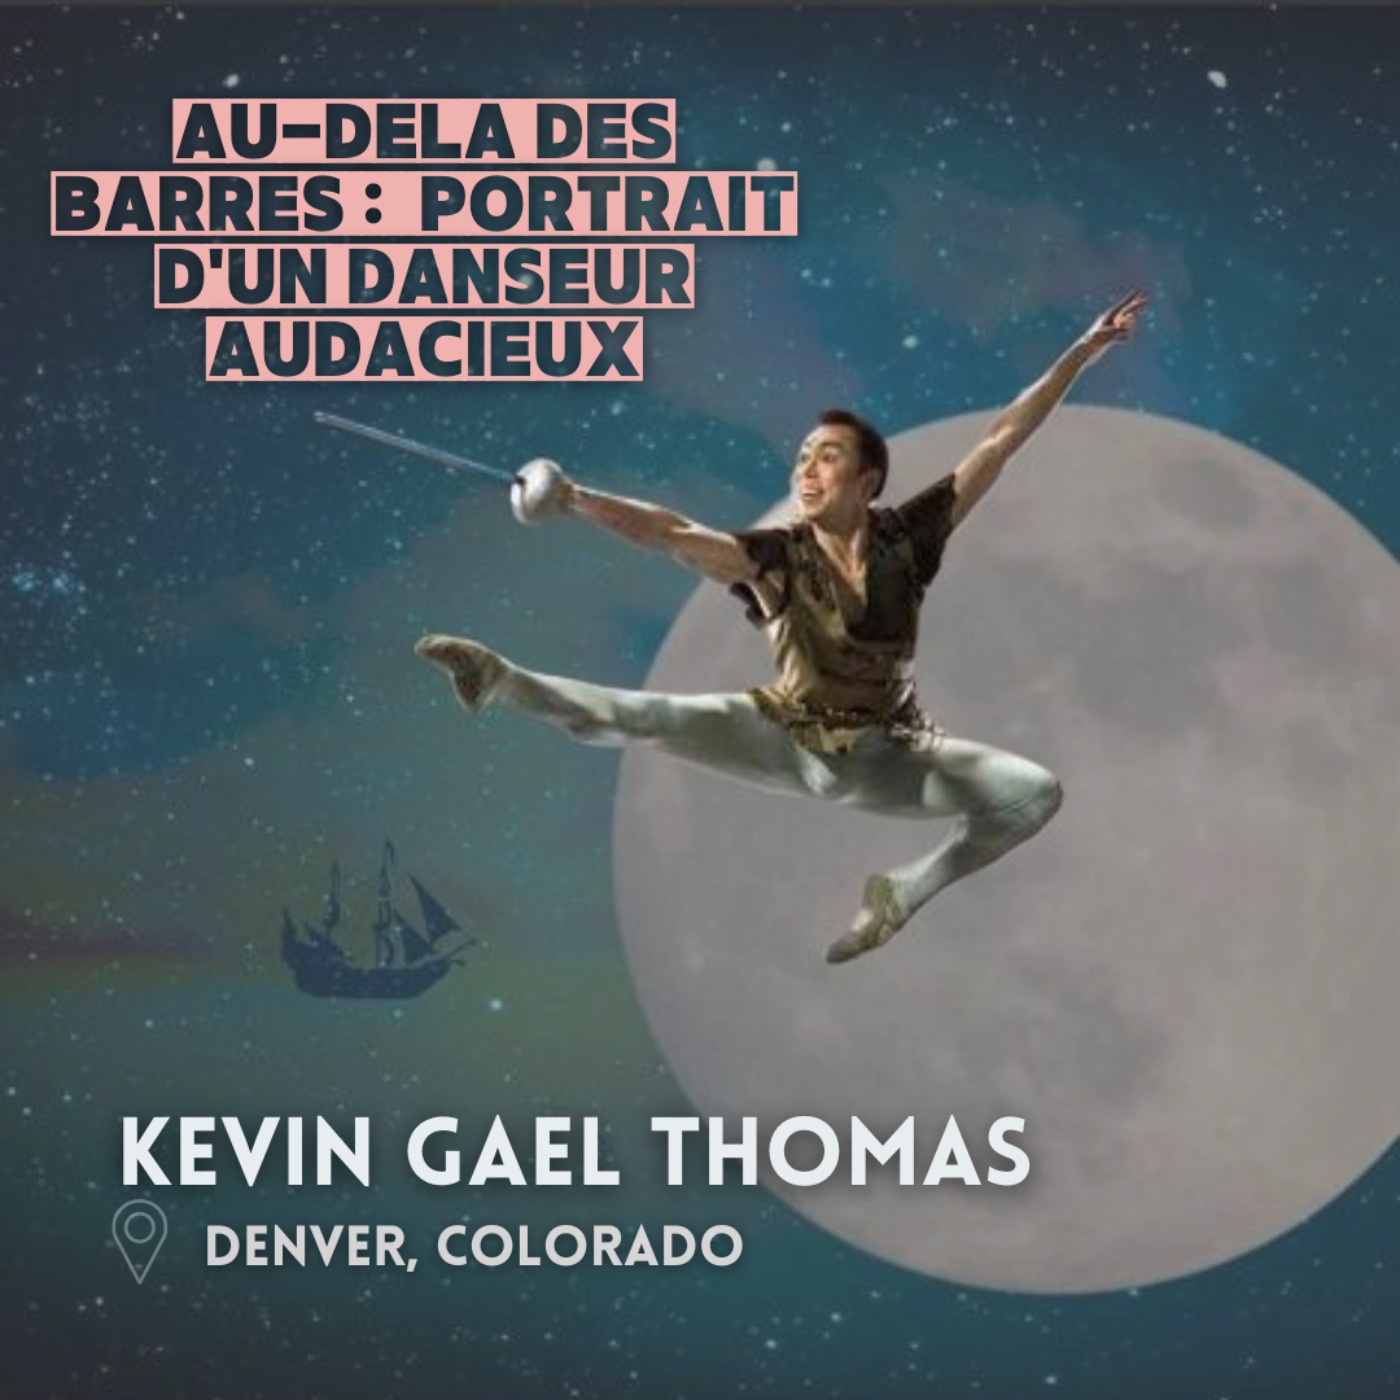 Au-Delà des Barres : Kevin Gael Thomas, Portrait d’un Danseur Audacieux